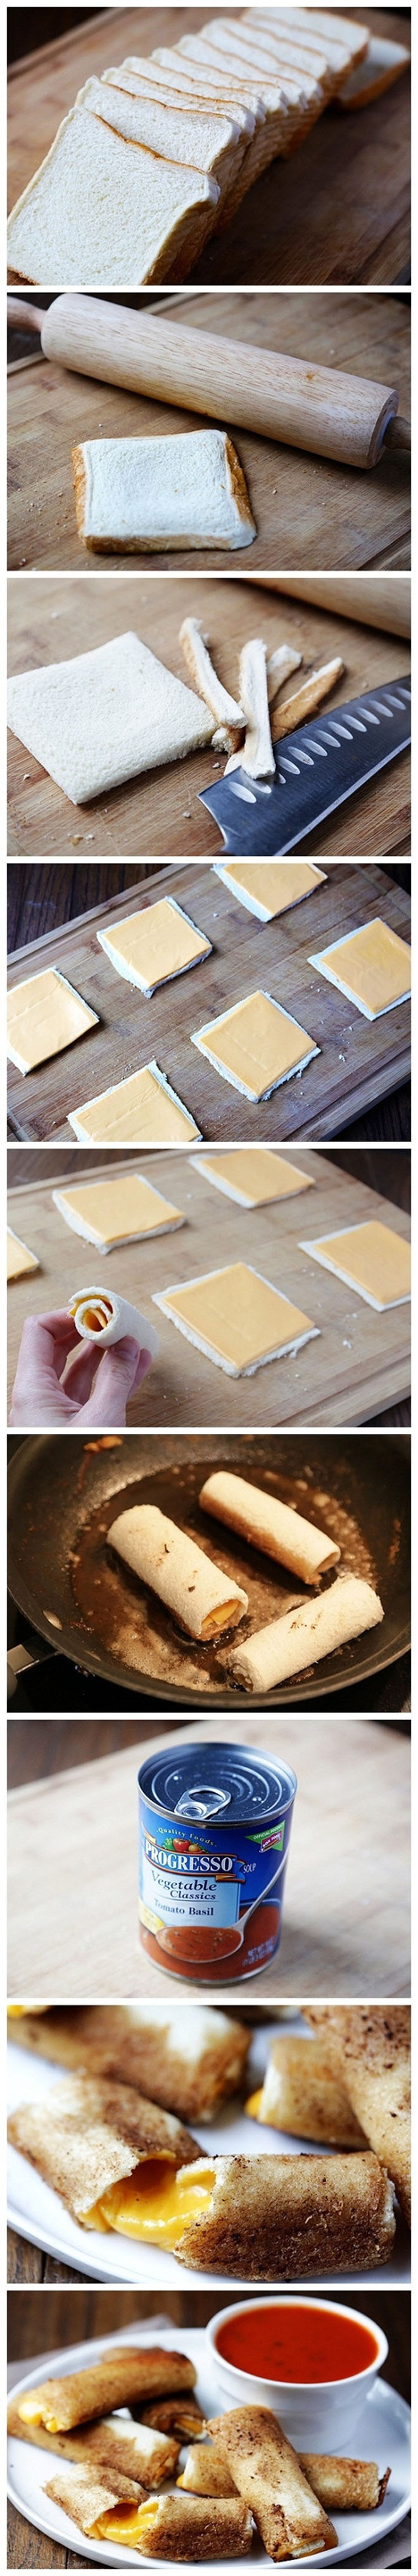 Faire des batonnets de fromage très simplement